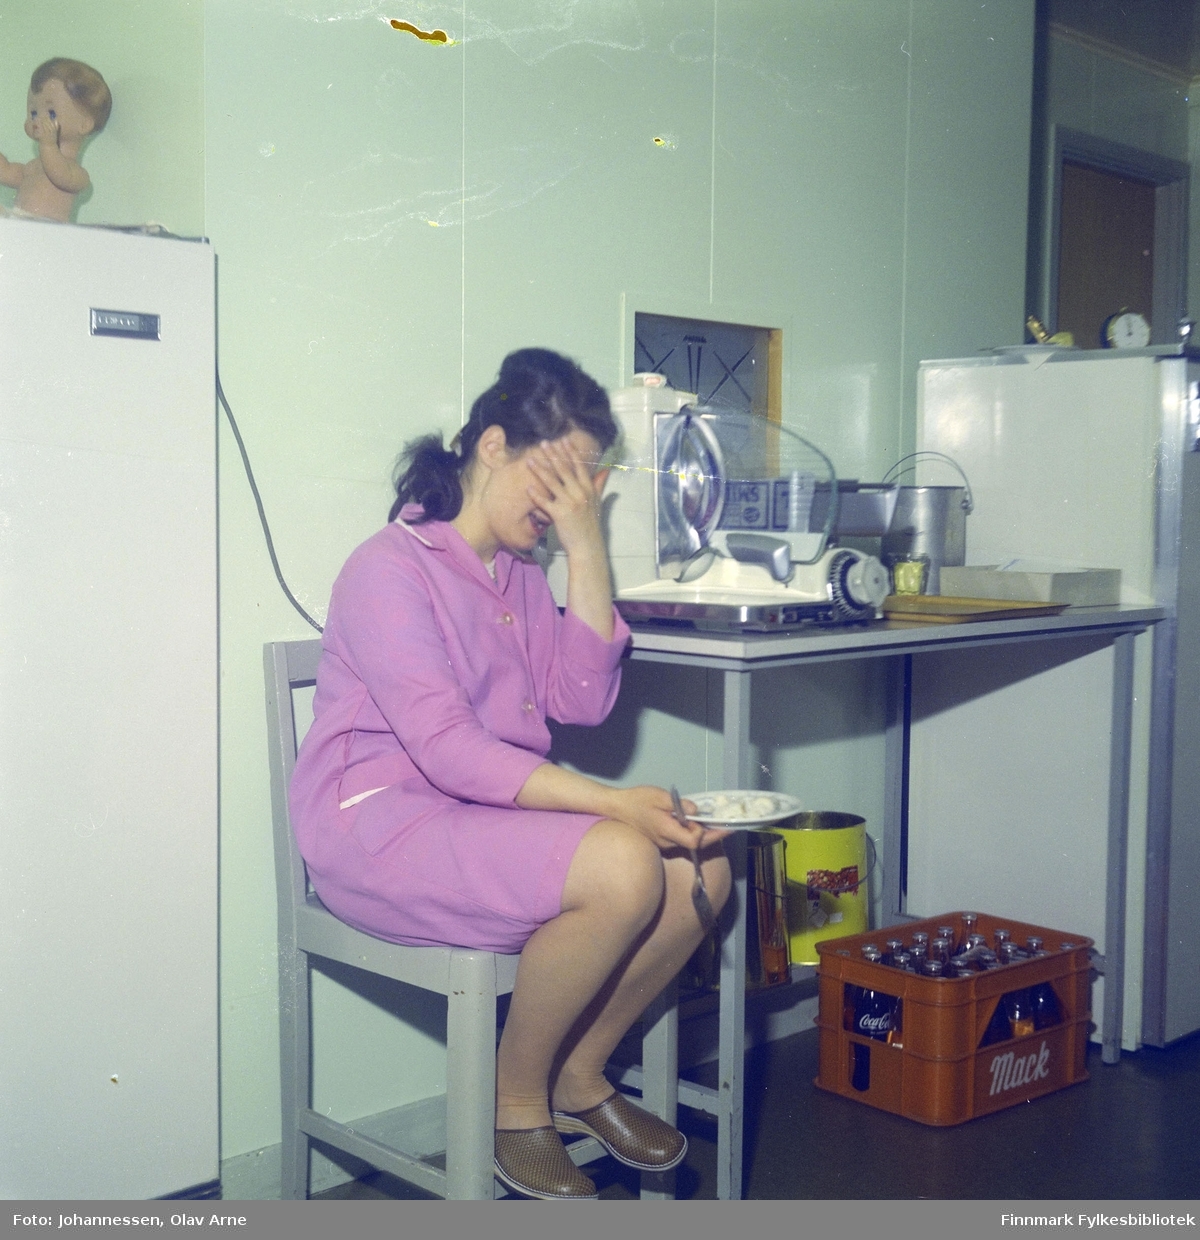 En ukjent kvinne spiser men hun sitter på en stol i et kjøkken, antagelig på Skansen i Båtsfjord

En kasse kan bli sett til høyresom inneholder coca-cola flasker

Foto trolig tatt på 1960-tallet